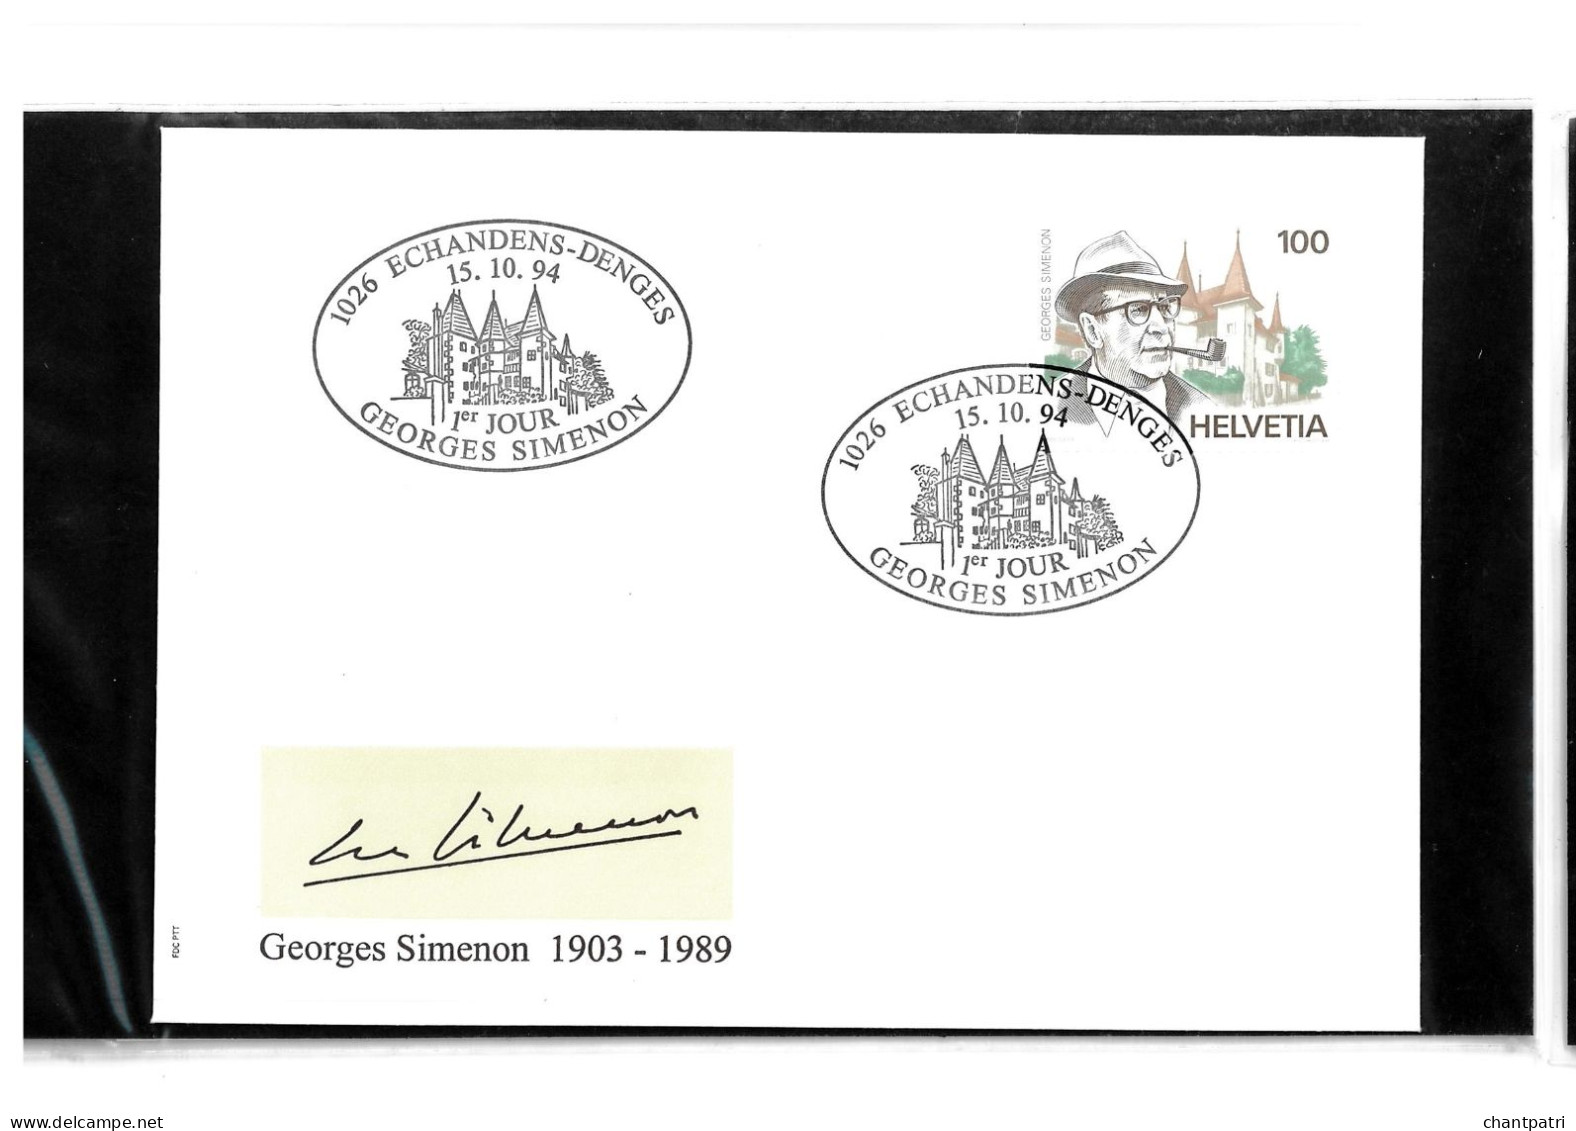 1026 Echandens Denges - 1er Jour Georges Simenon - 15 10 1994 - Beli FDC 117 - Lettres & Documents